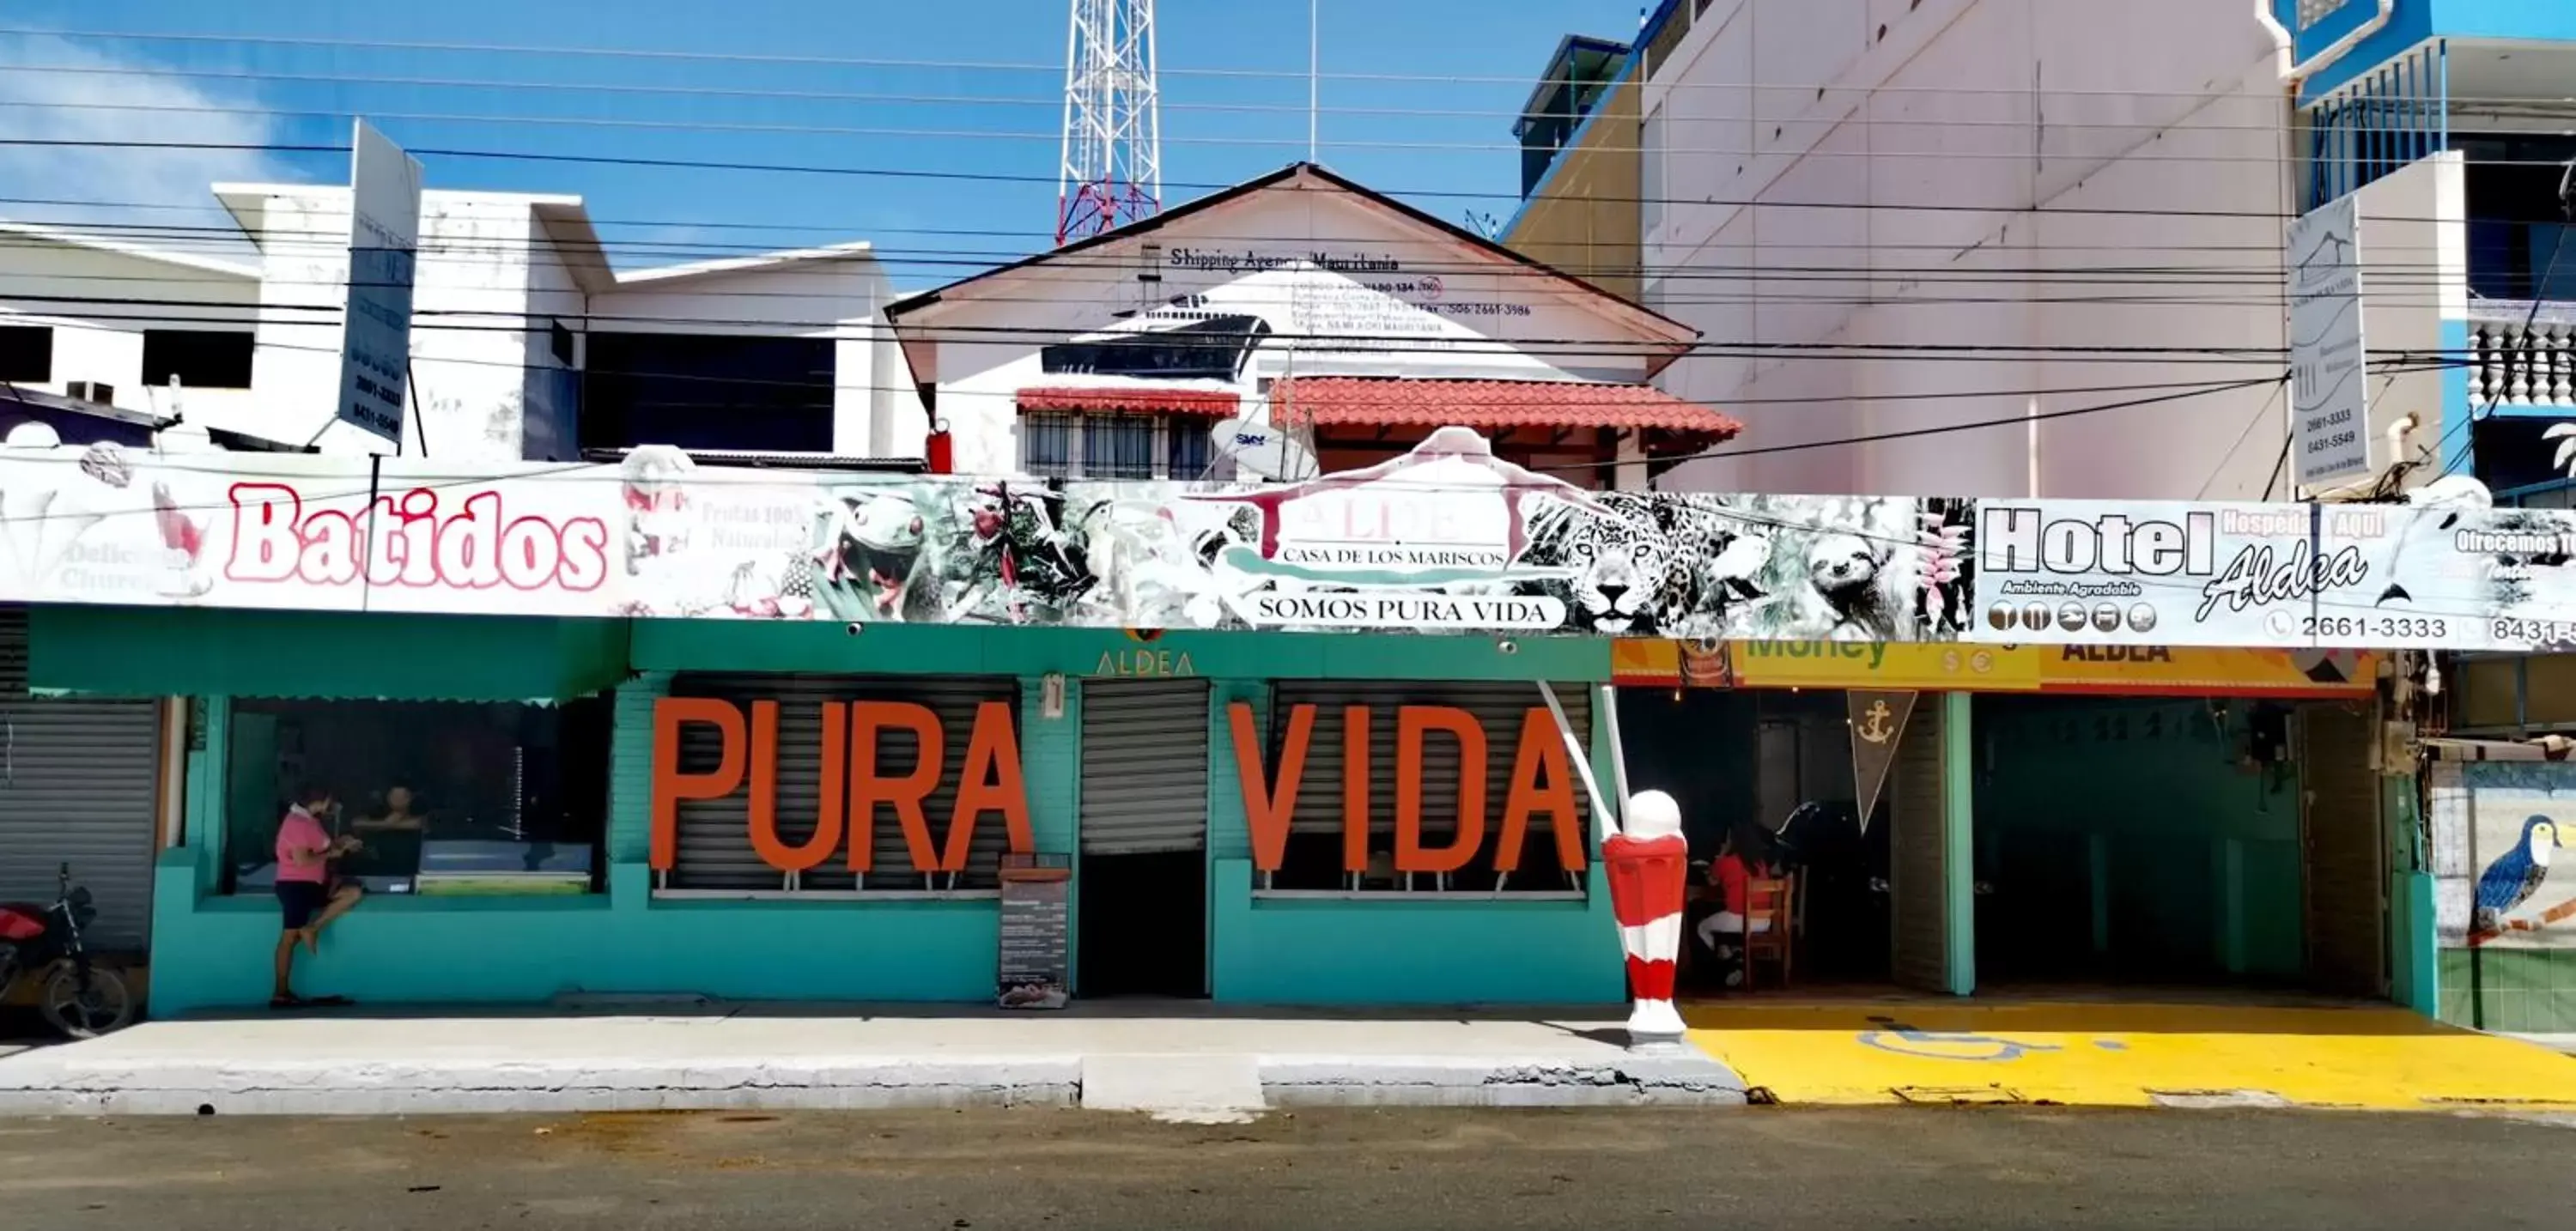 Property Building in Hotel Aldea Pura Vida